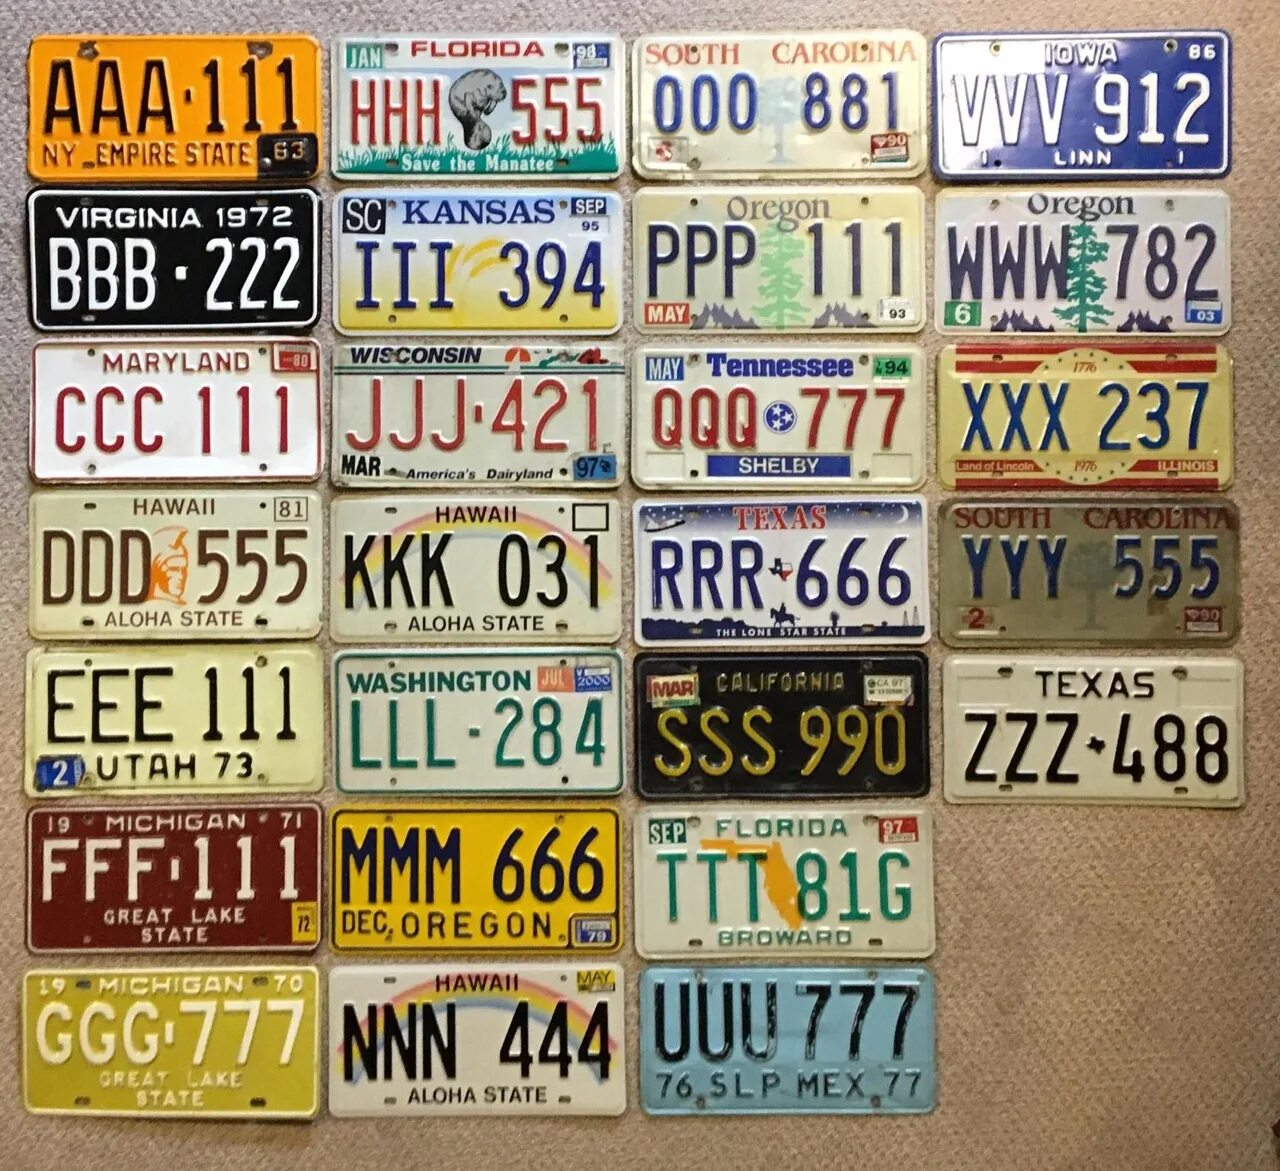 Автомобильные номера. Автомобильные номера США. Американский номерной знак. Американские номера авто. Буквы цифры на авто